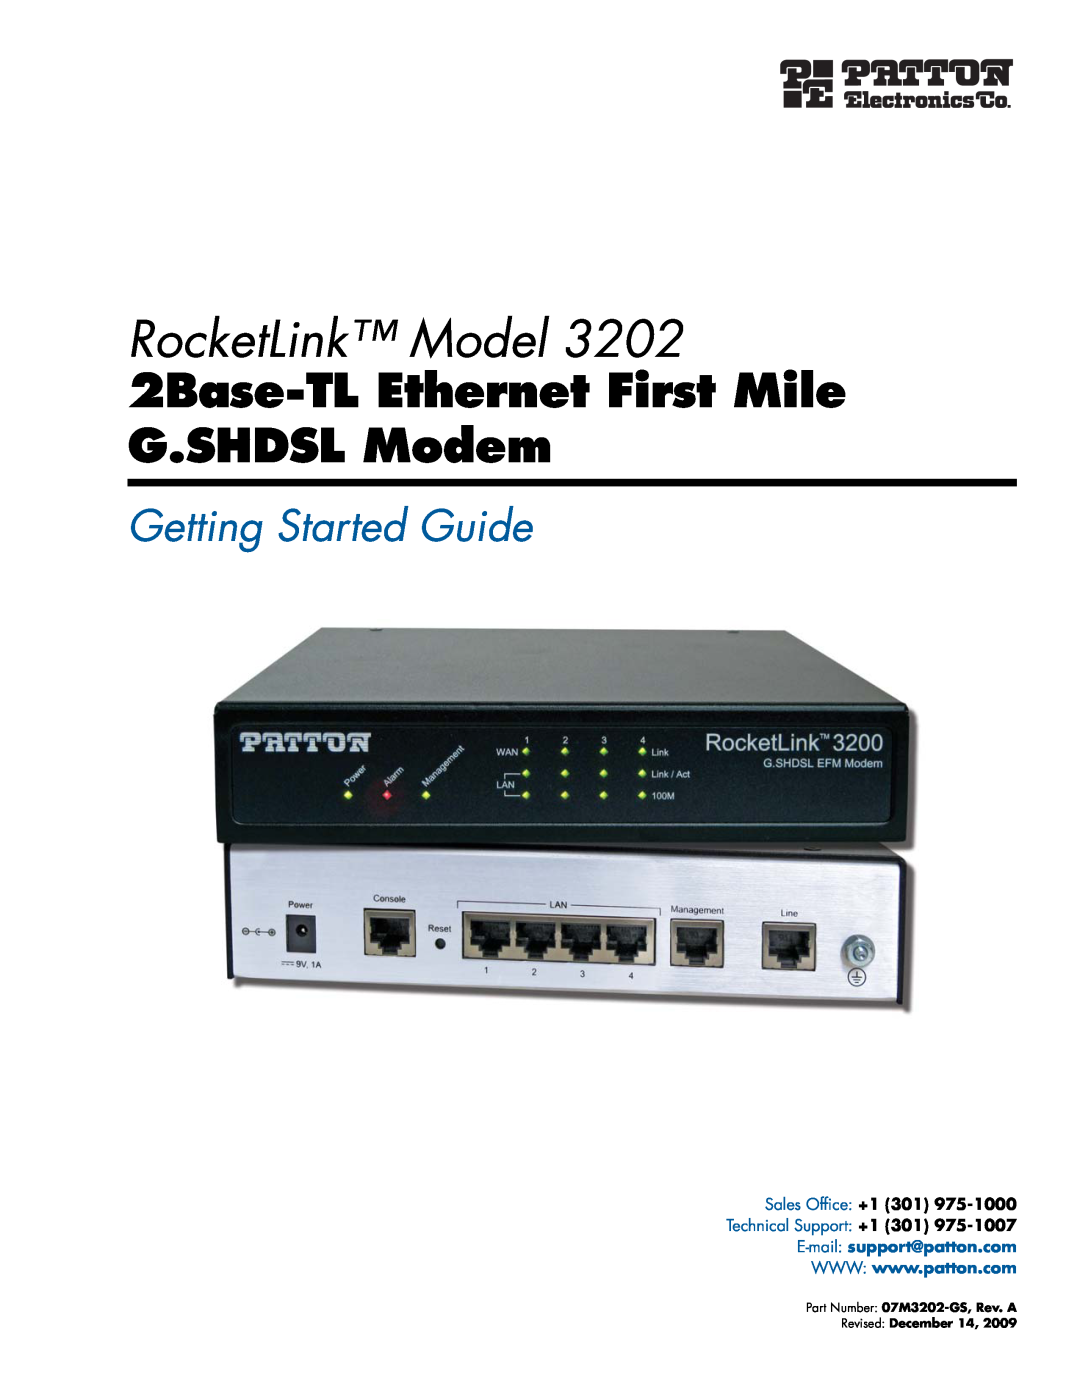 Patton electronic 3202 manual RocketLink Model, 2Base-TL Ethernet First Mile G.SHDSL Modem, Getting Started Guide 